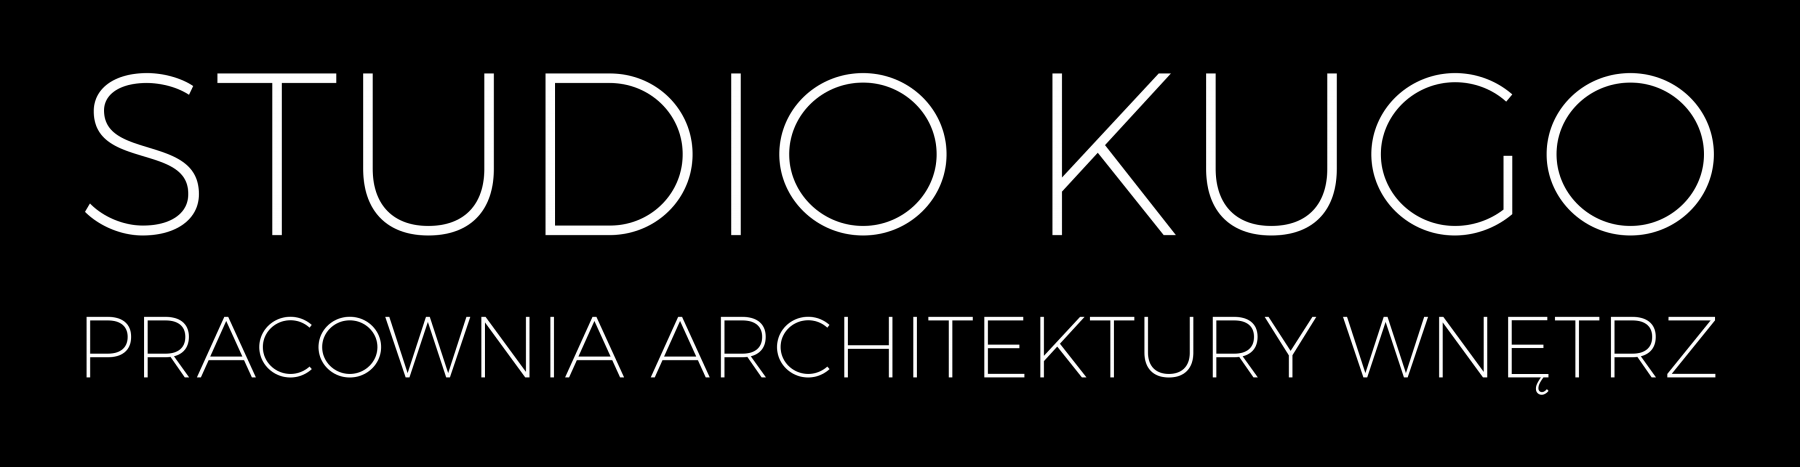 STUDIO KUGO - PRACOWNIA ARCHITEKTURY WNĘTRZ